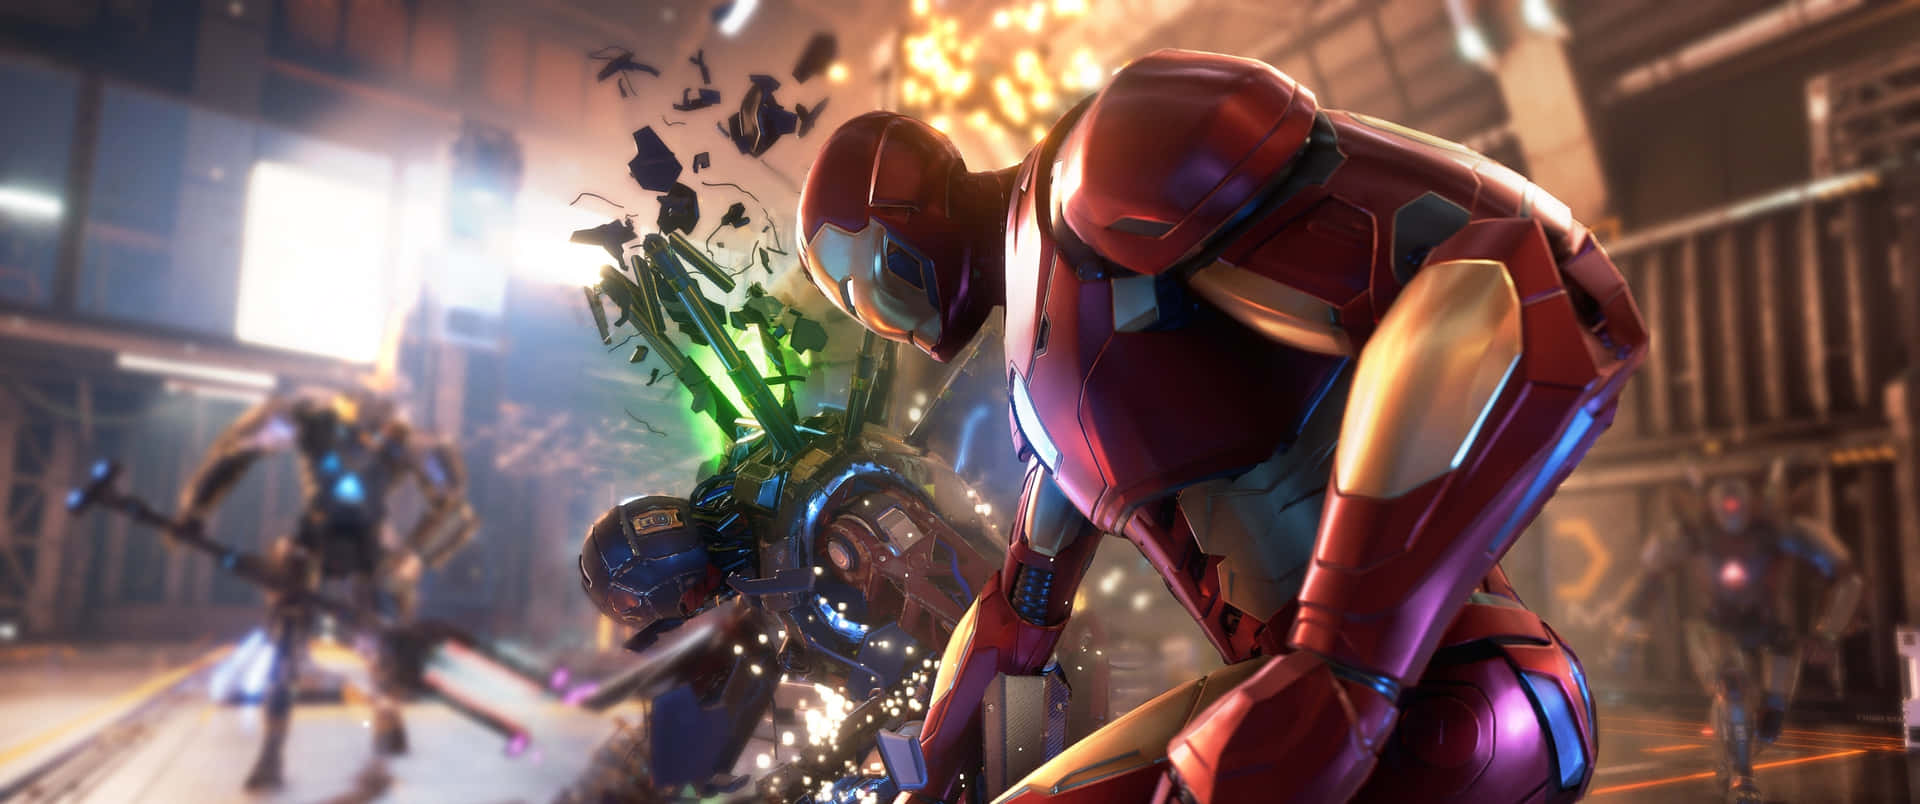 En scene fra et videospil med Iron Man og andre figurer